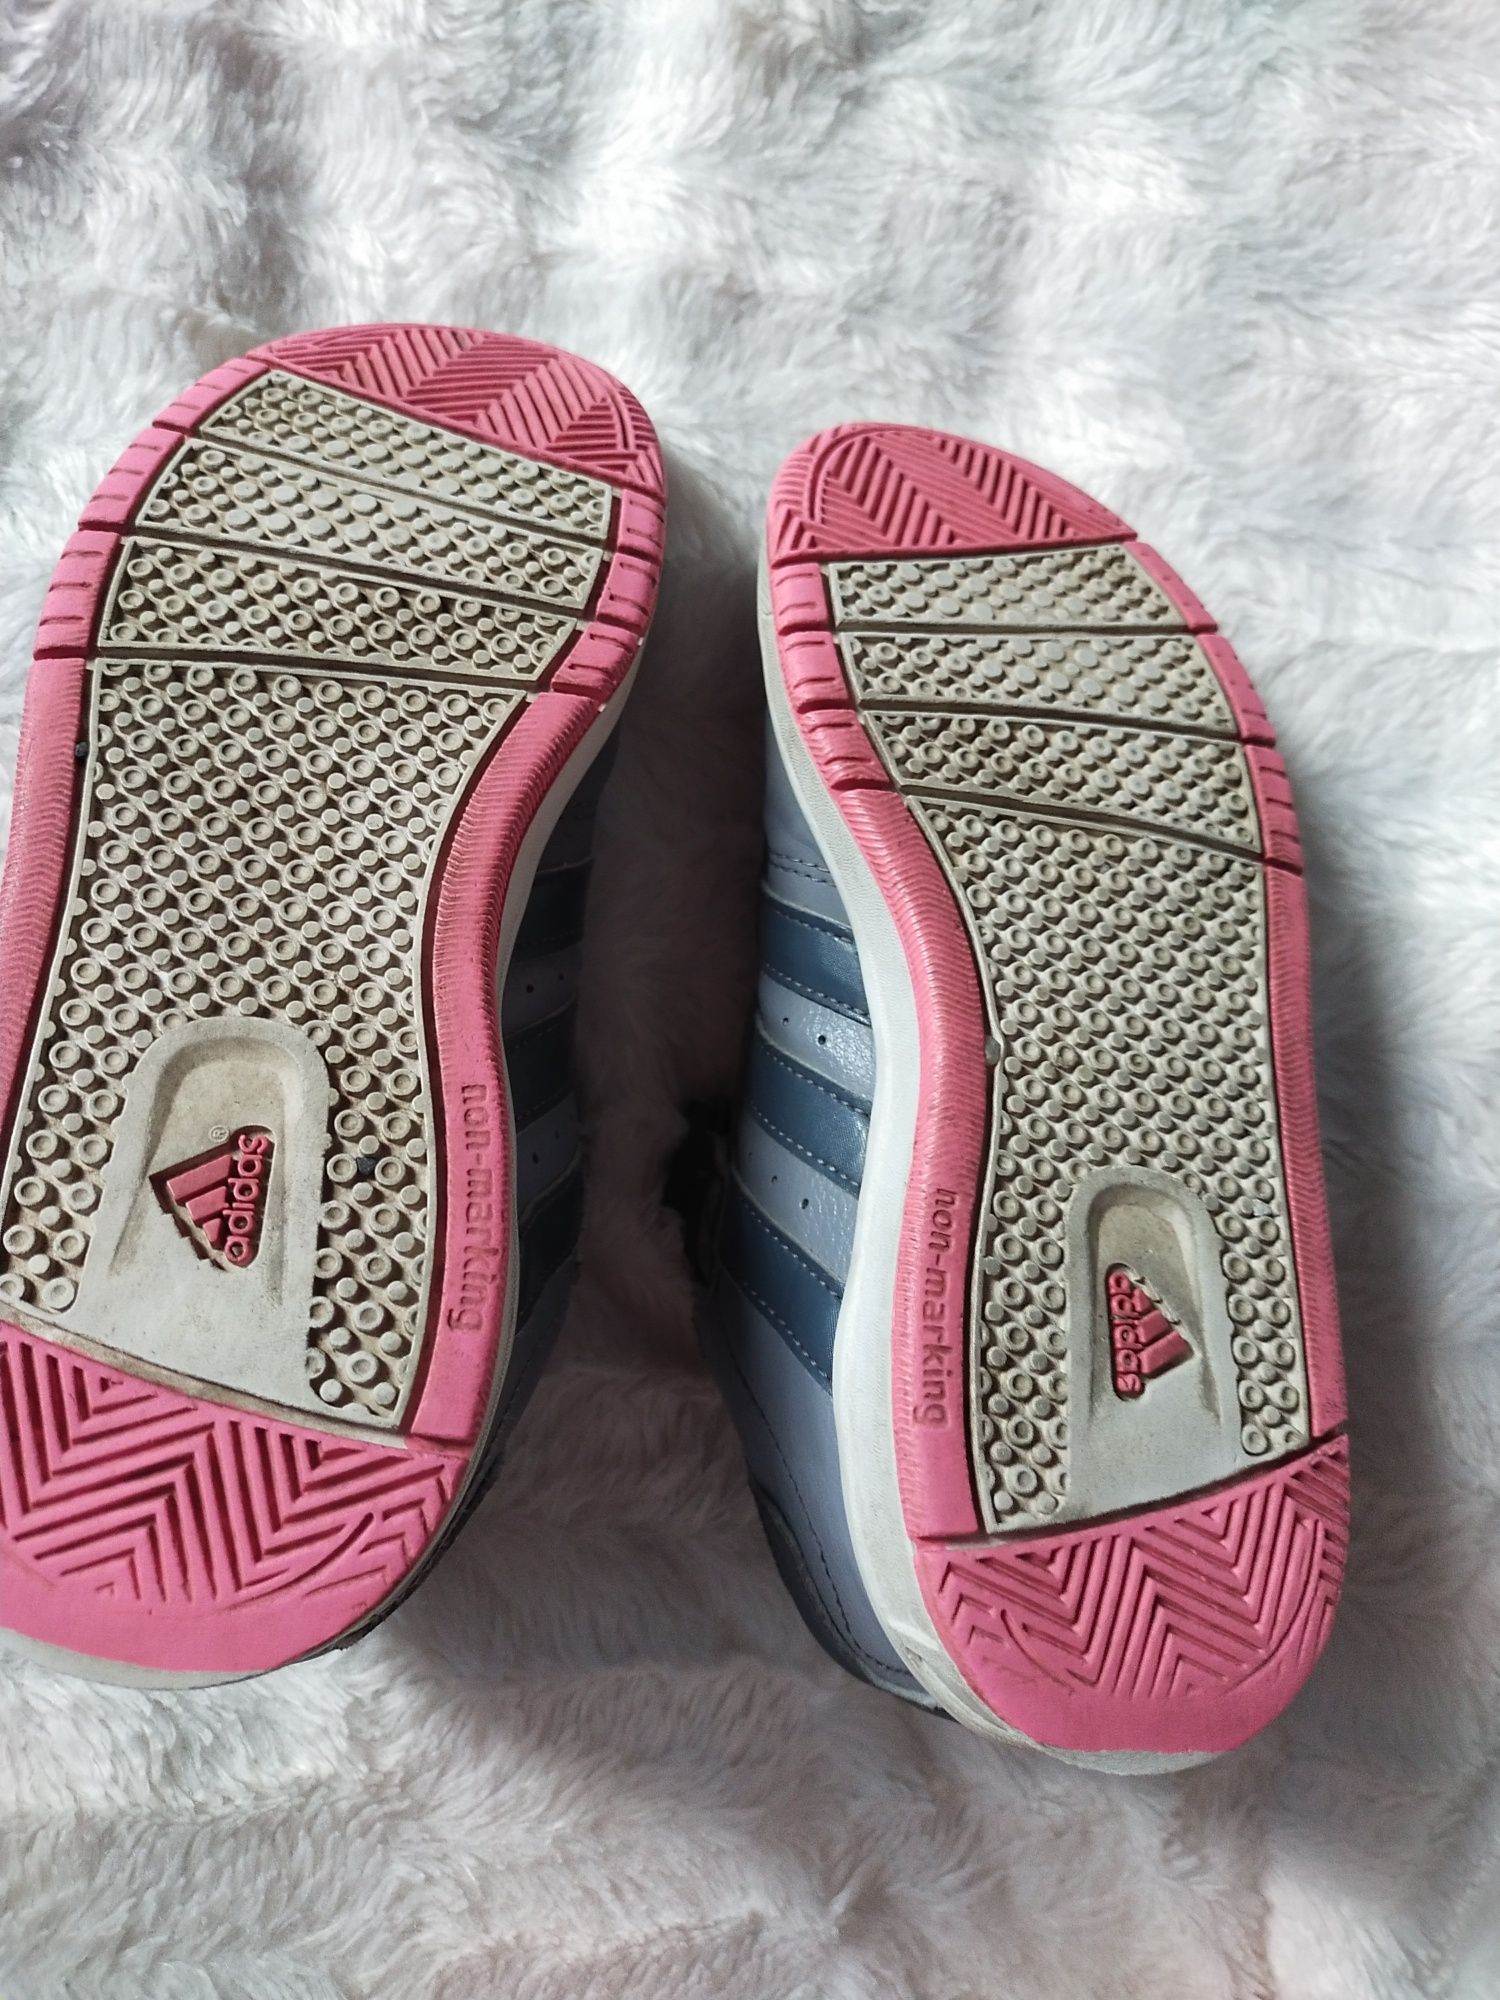 Adidas buty dziewczęce 31 * 20 cm